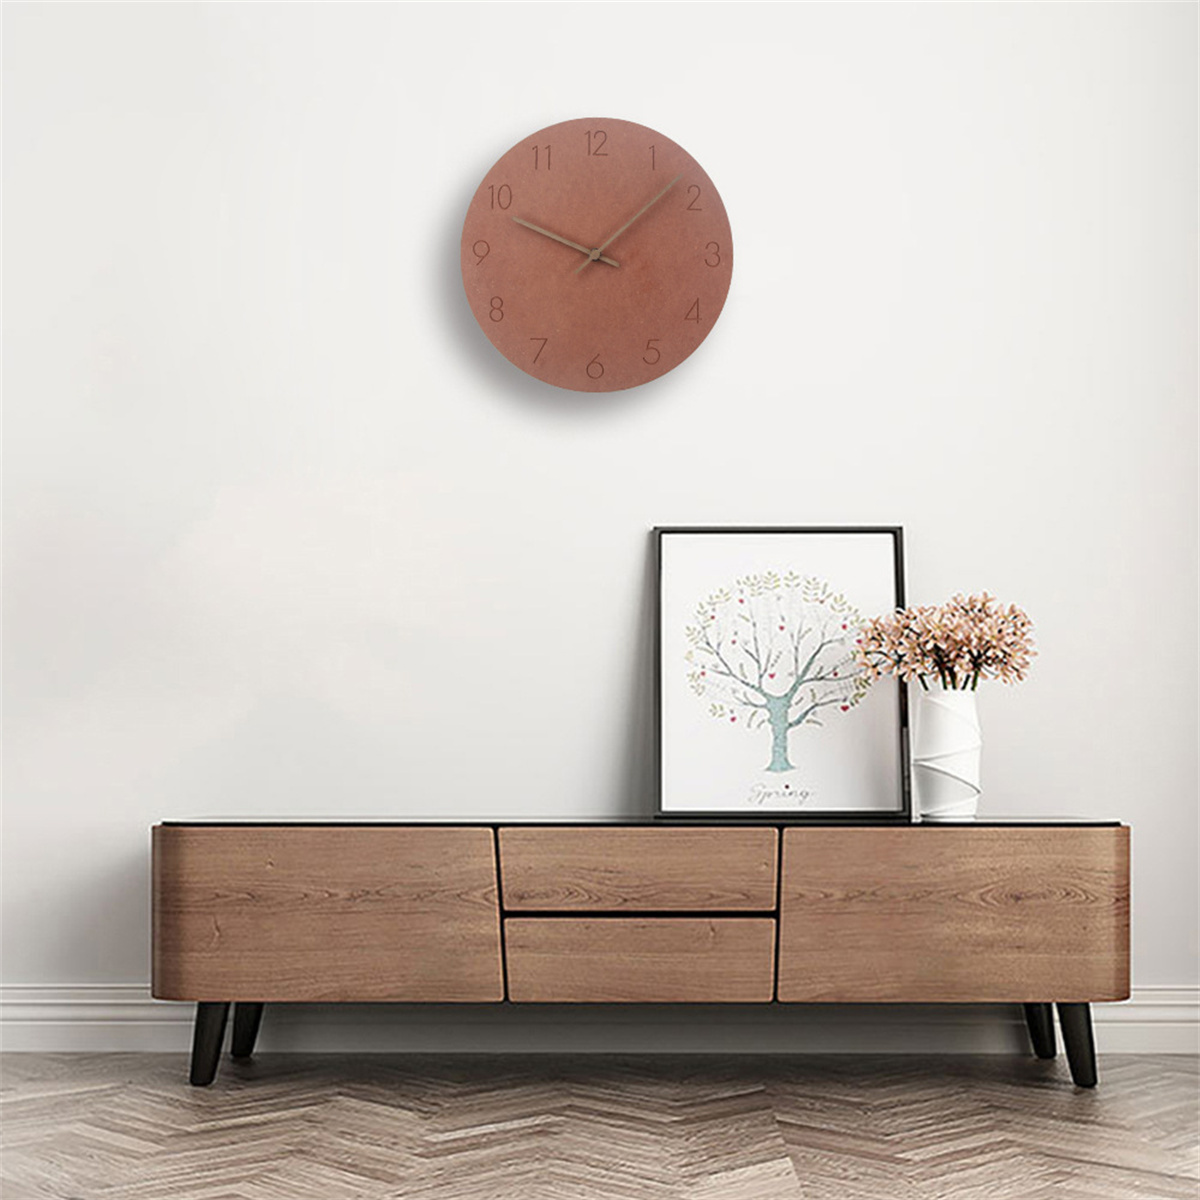 SYNTEK Uhr aus kreativ Wanduhr stumm Wohnzimmer Wanduhr minimalistische hängen Uhren grün Holz